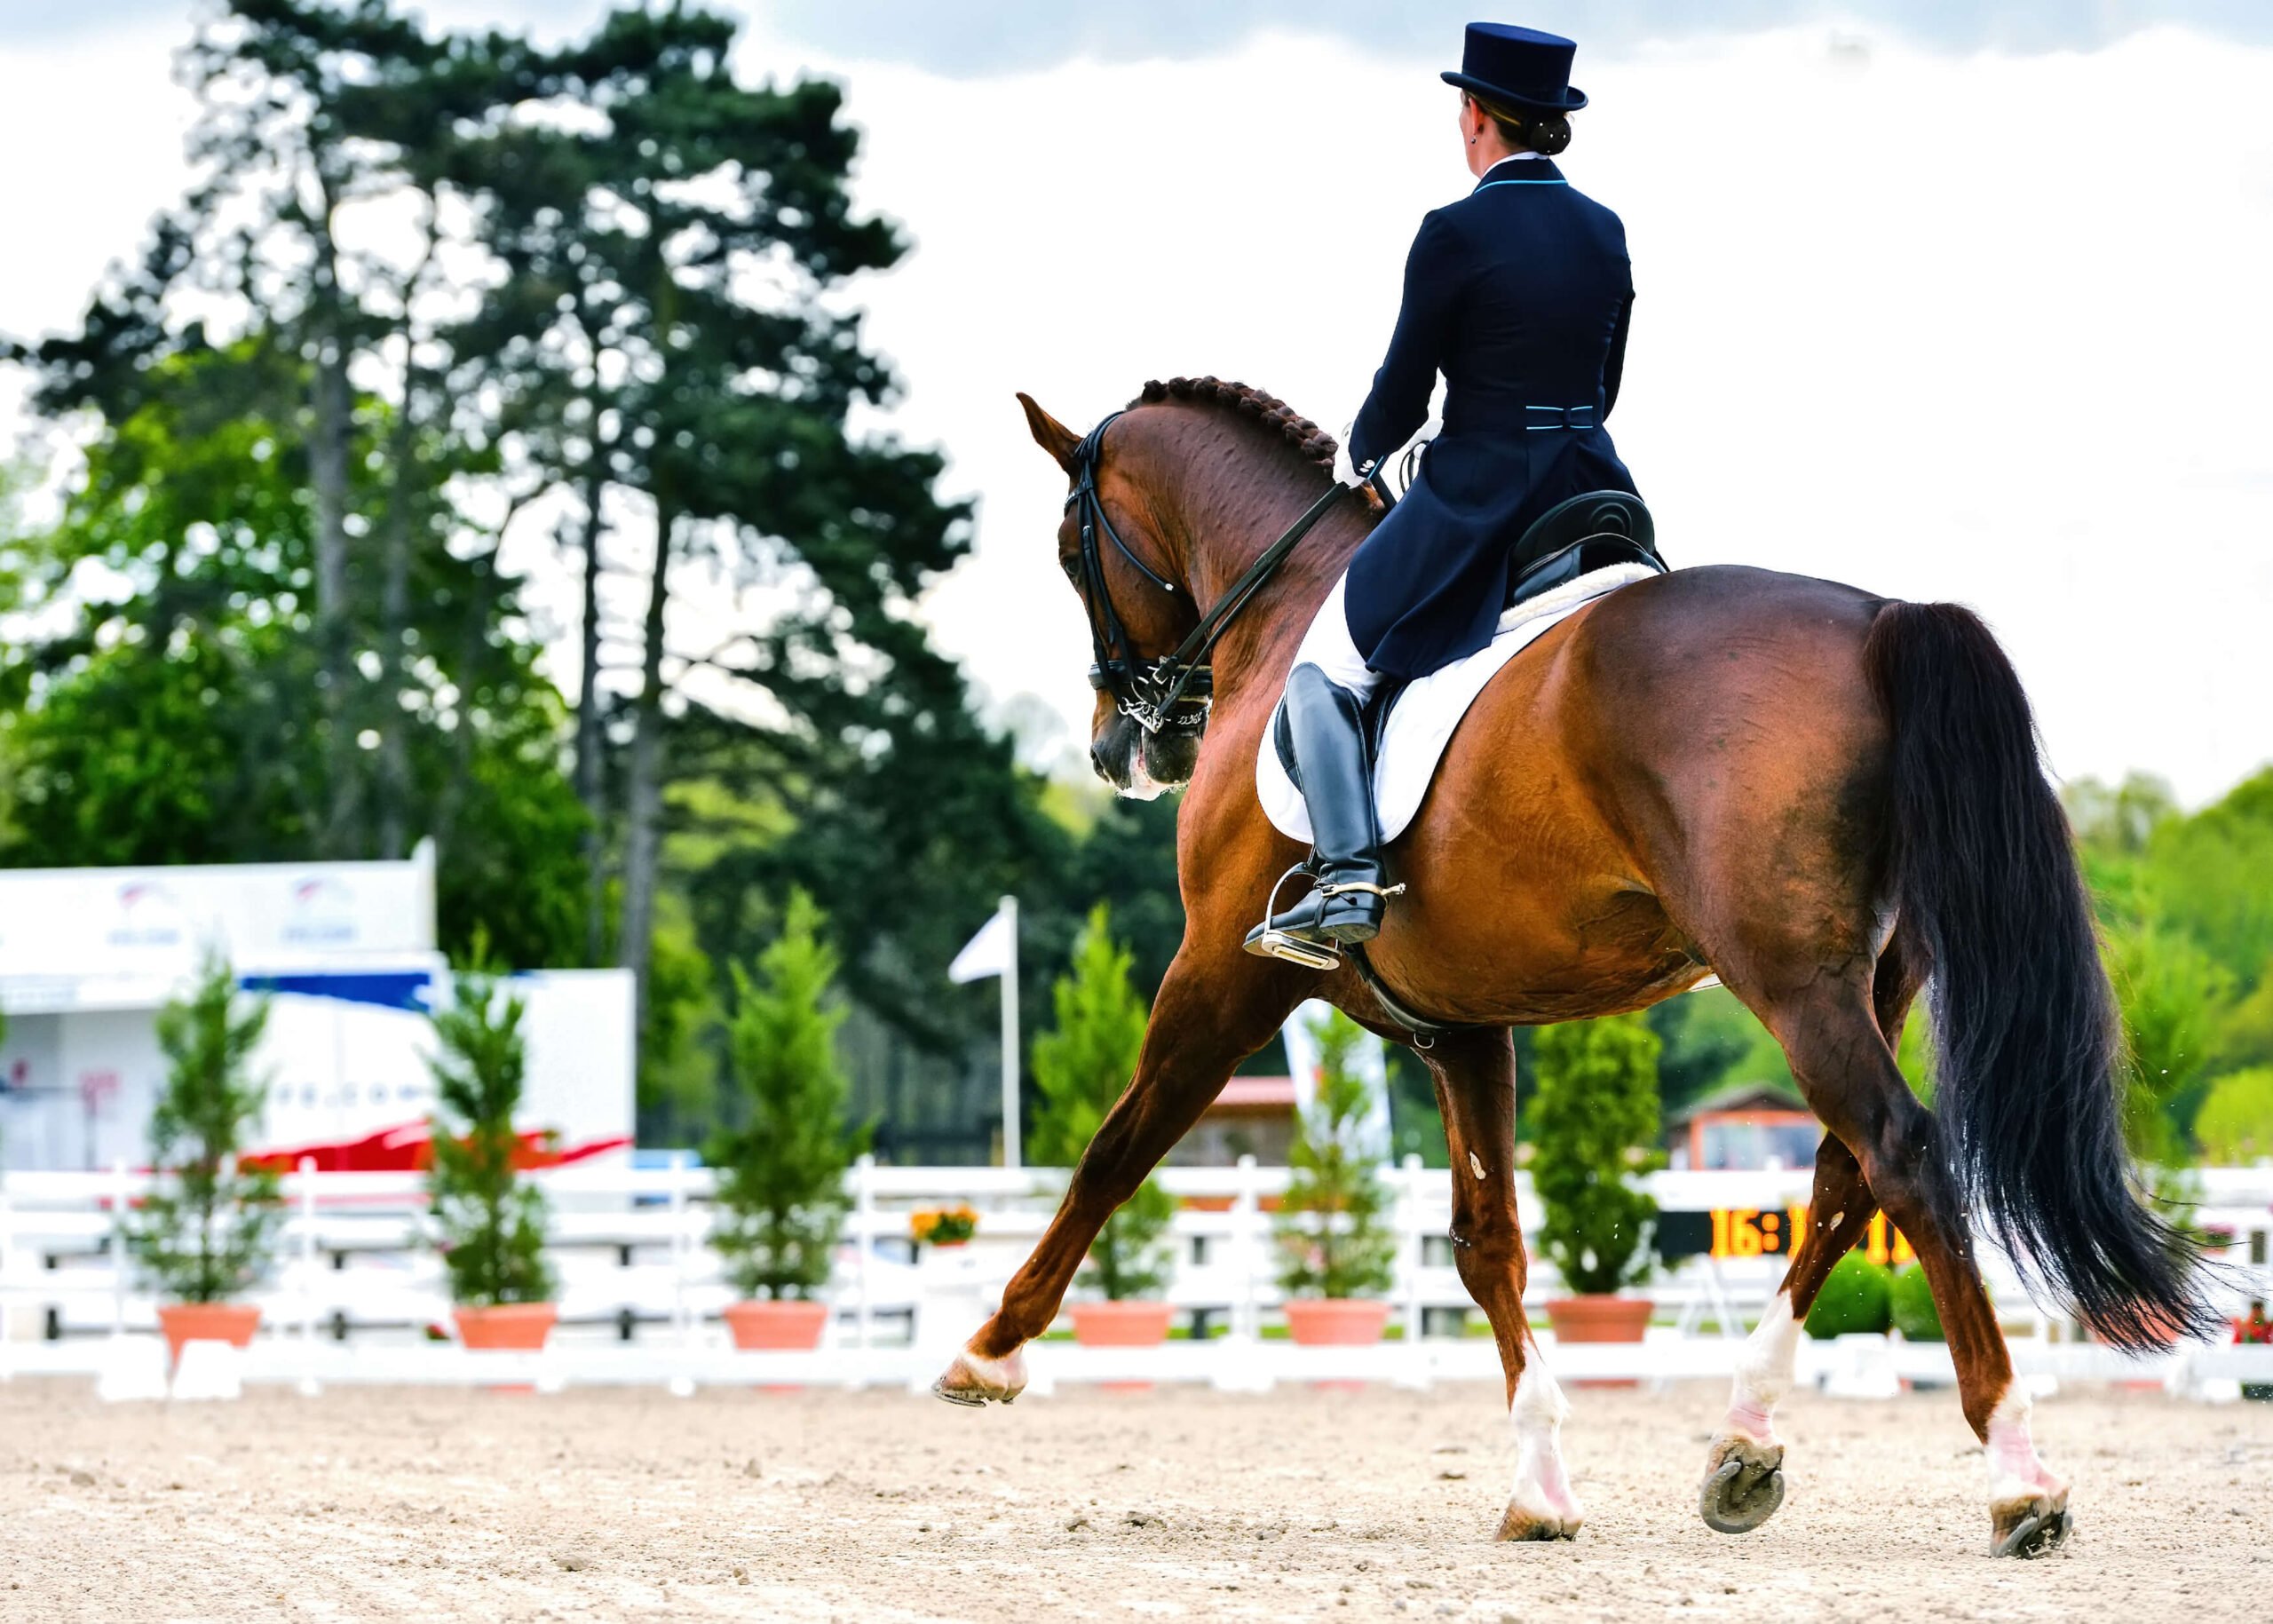 Dressurreiterin in eleganter Reitkleidung demonstriert auf einem braunen Pferd eine Dressurübung in einem Wettkampfumfeld mit Springparcours im Hintergrund.